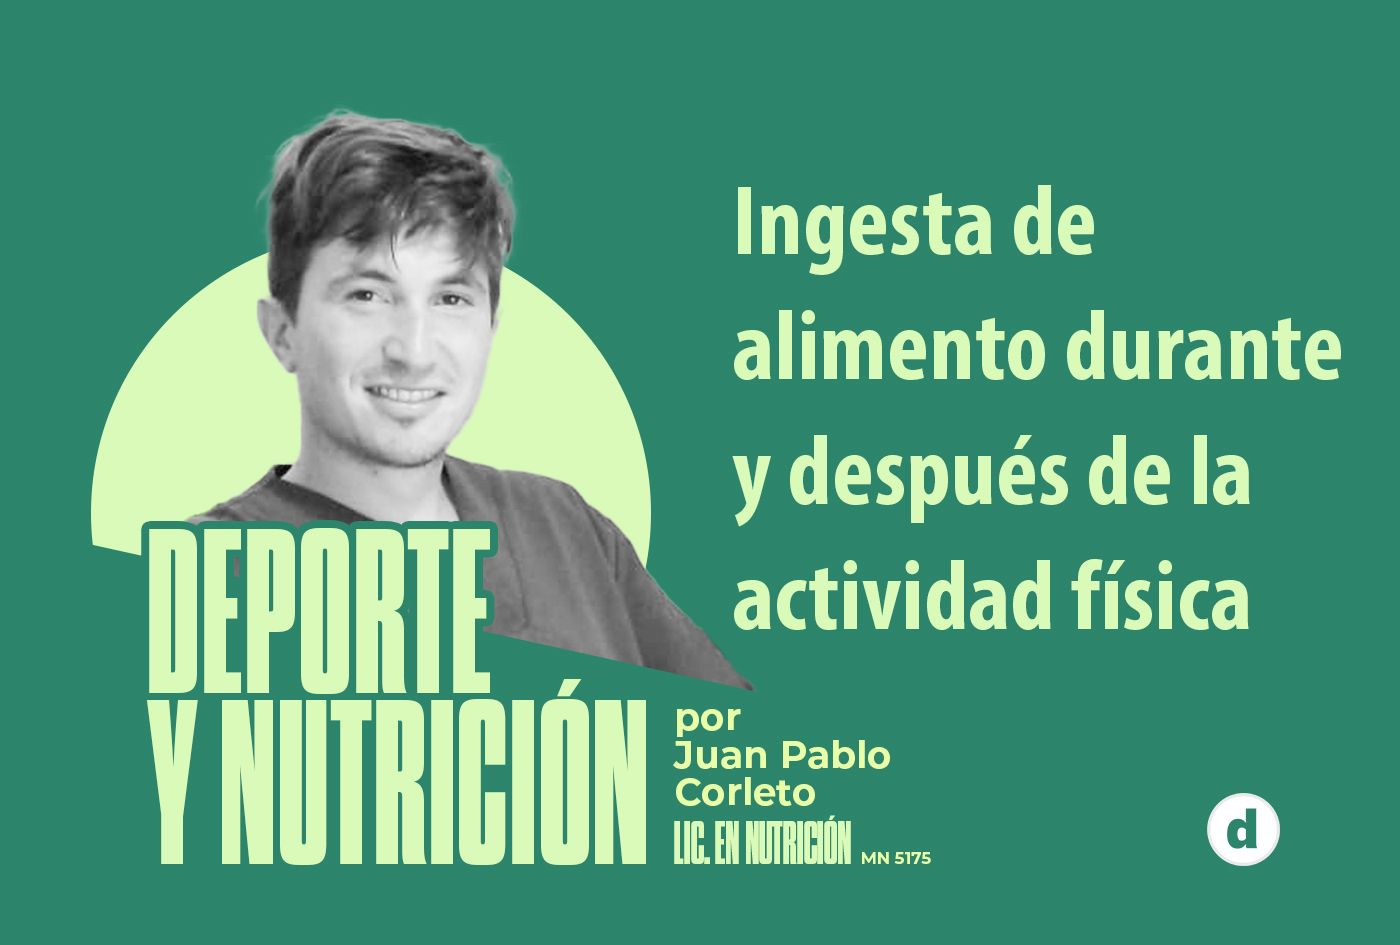 La columna del nutricionista Juan Pablo Corleto: “Ingesta de alimentos durante y después de la actividad física”